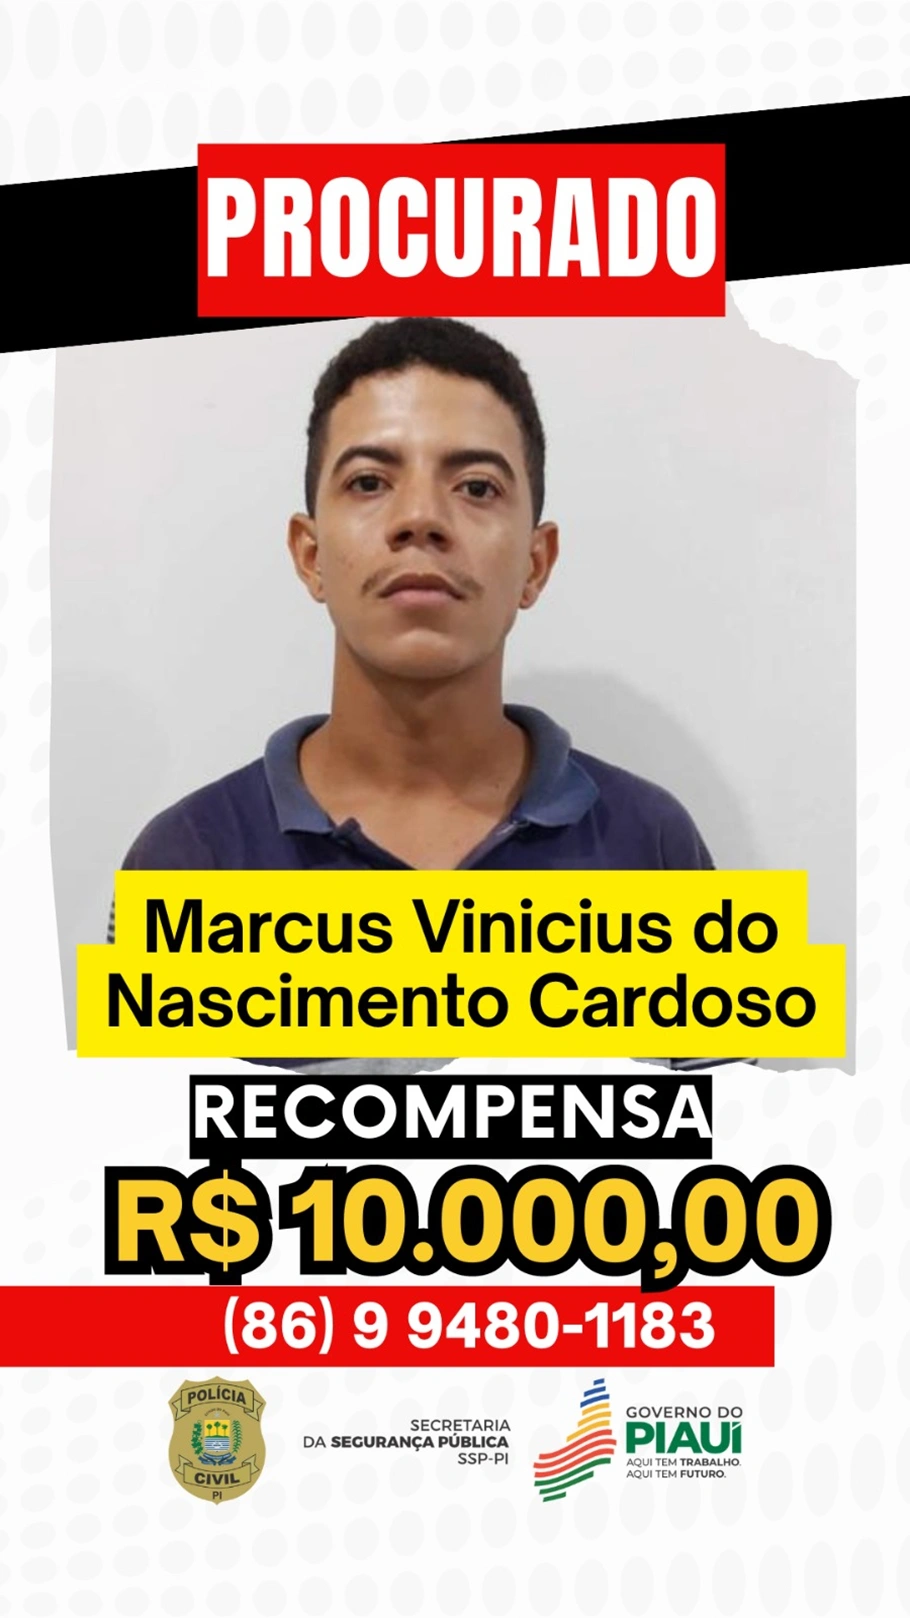 Polícia oferece recompensa de R$ 10 mil por informações que levam a Marcos Vinicius do Nascimento Cardoso